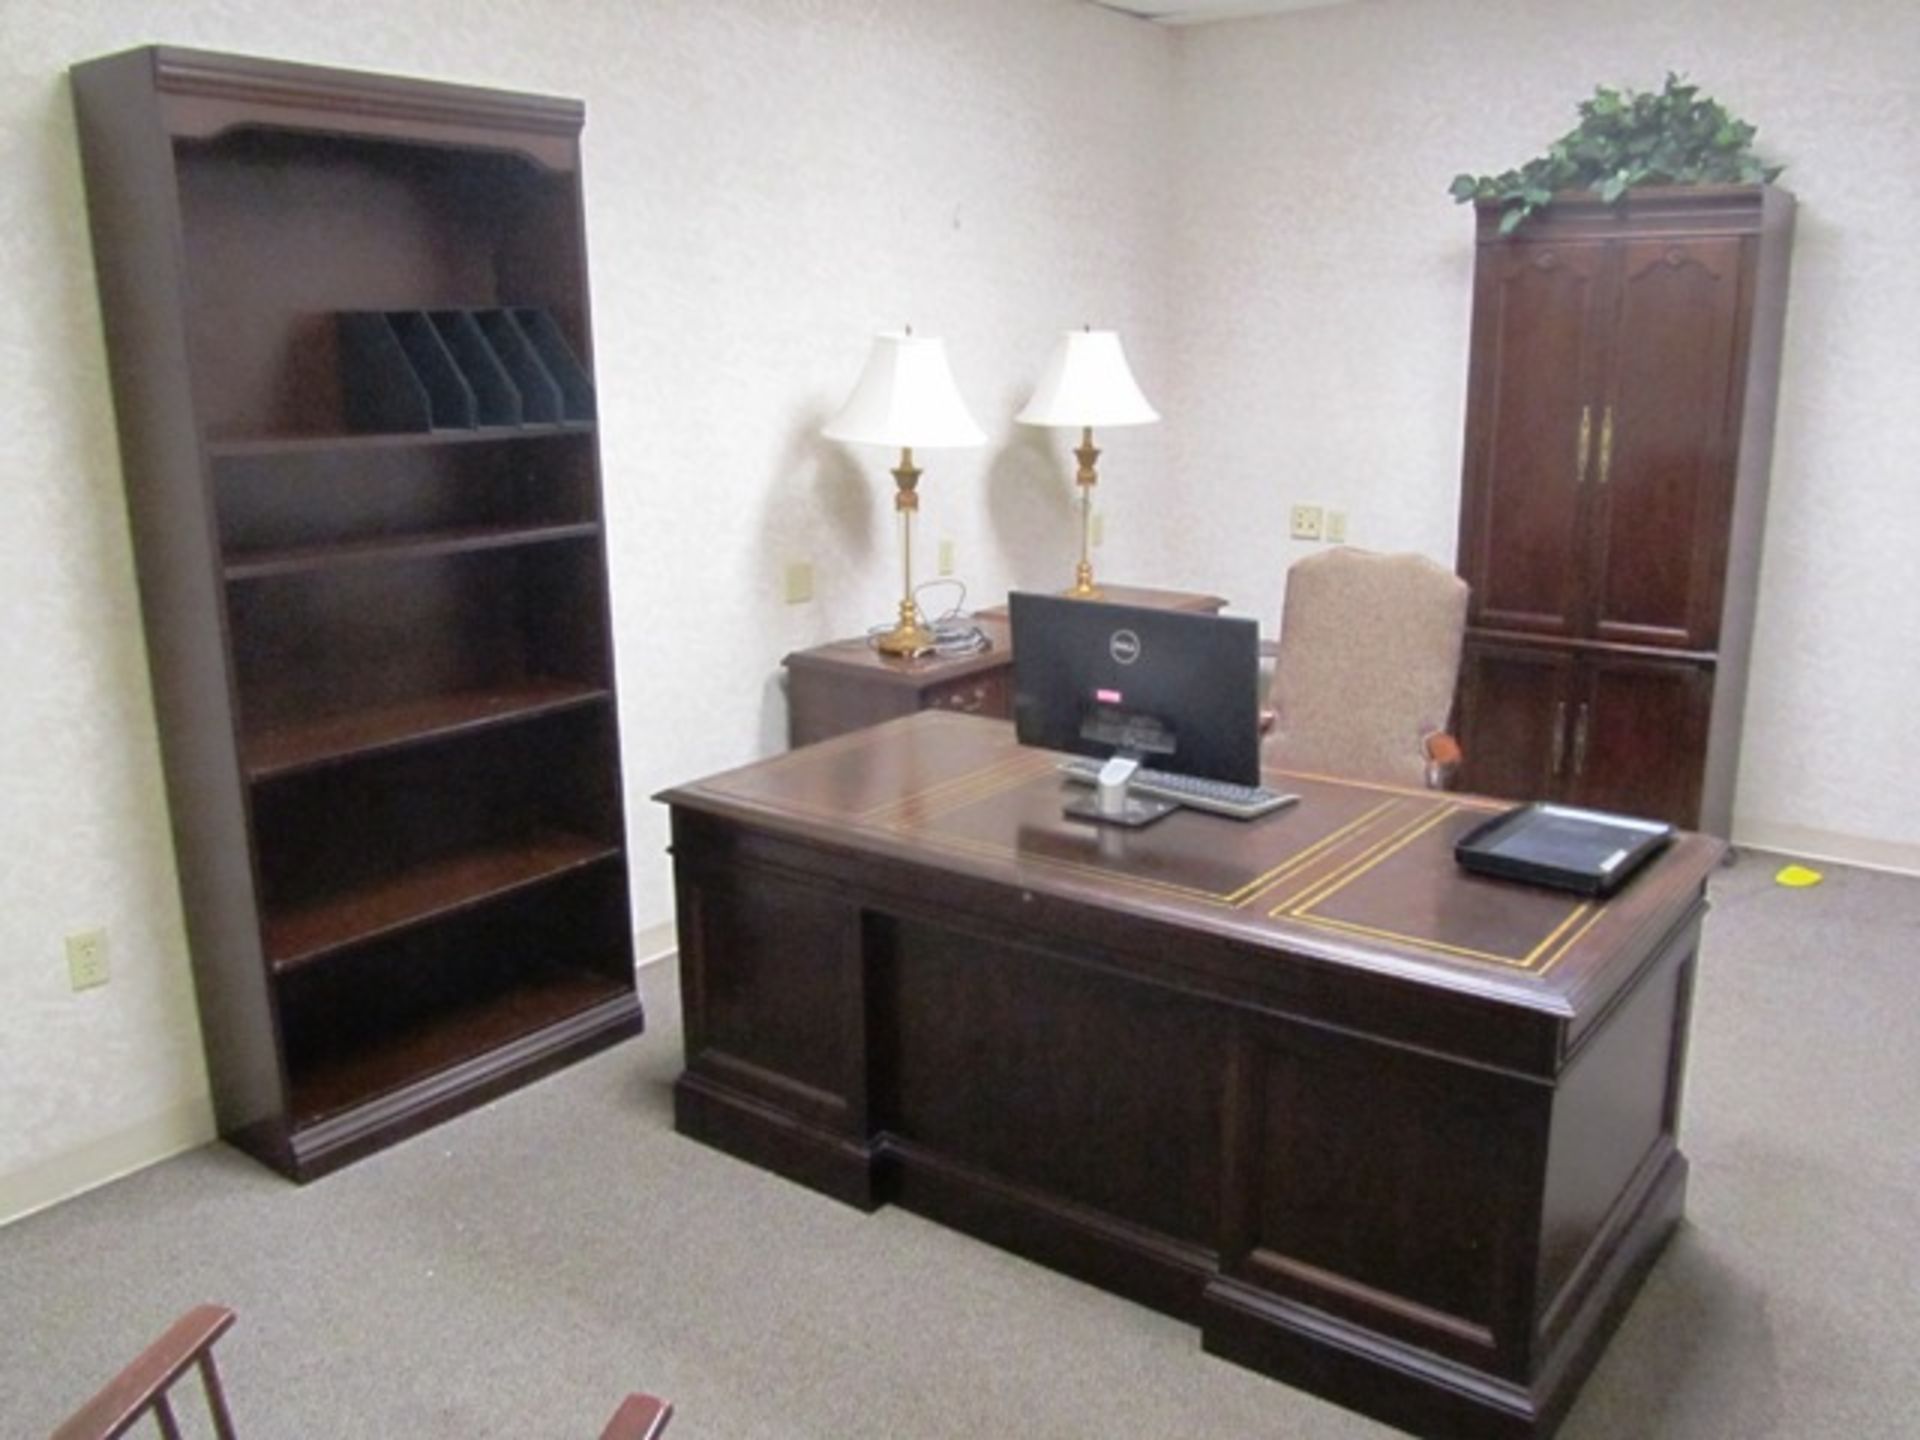 Contents of Office consisting of Desk, 4 Door Cabinet, Credenza, Bookshelf